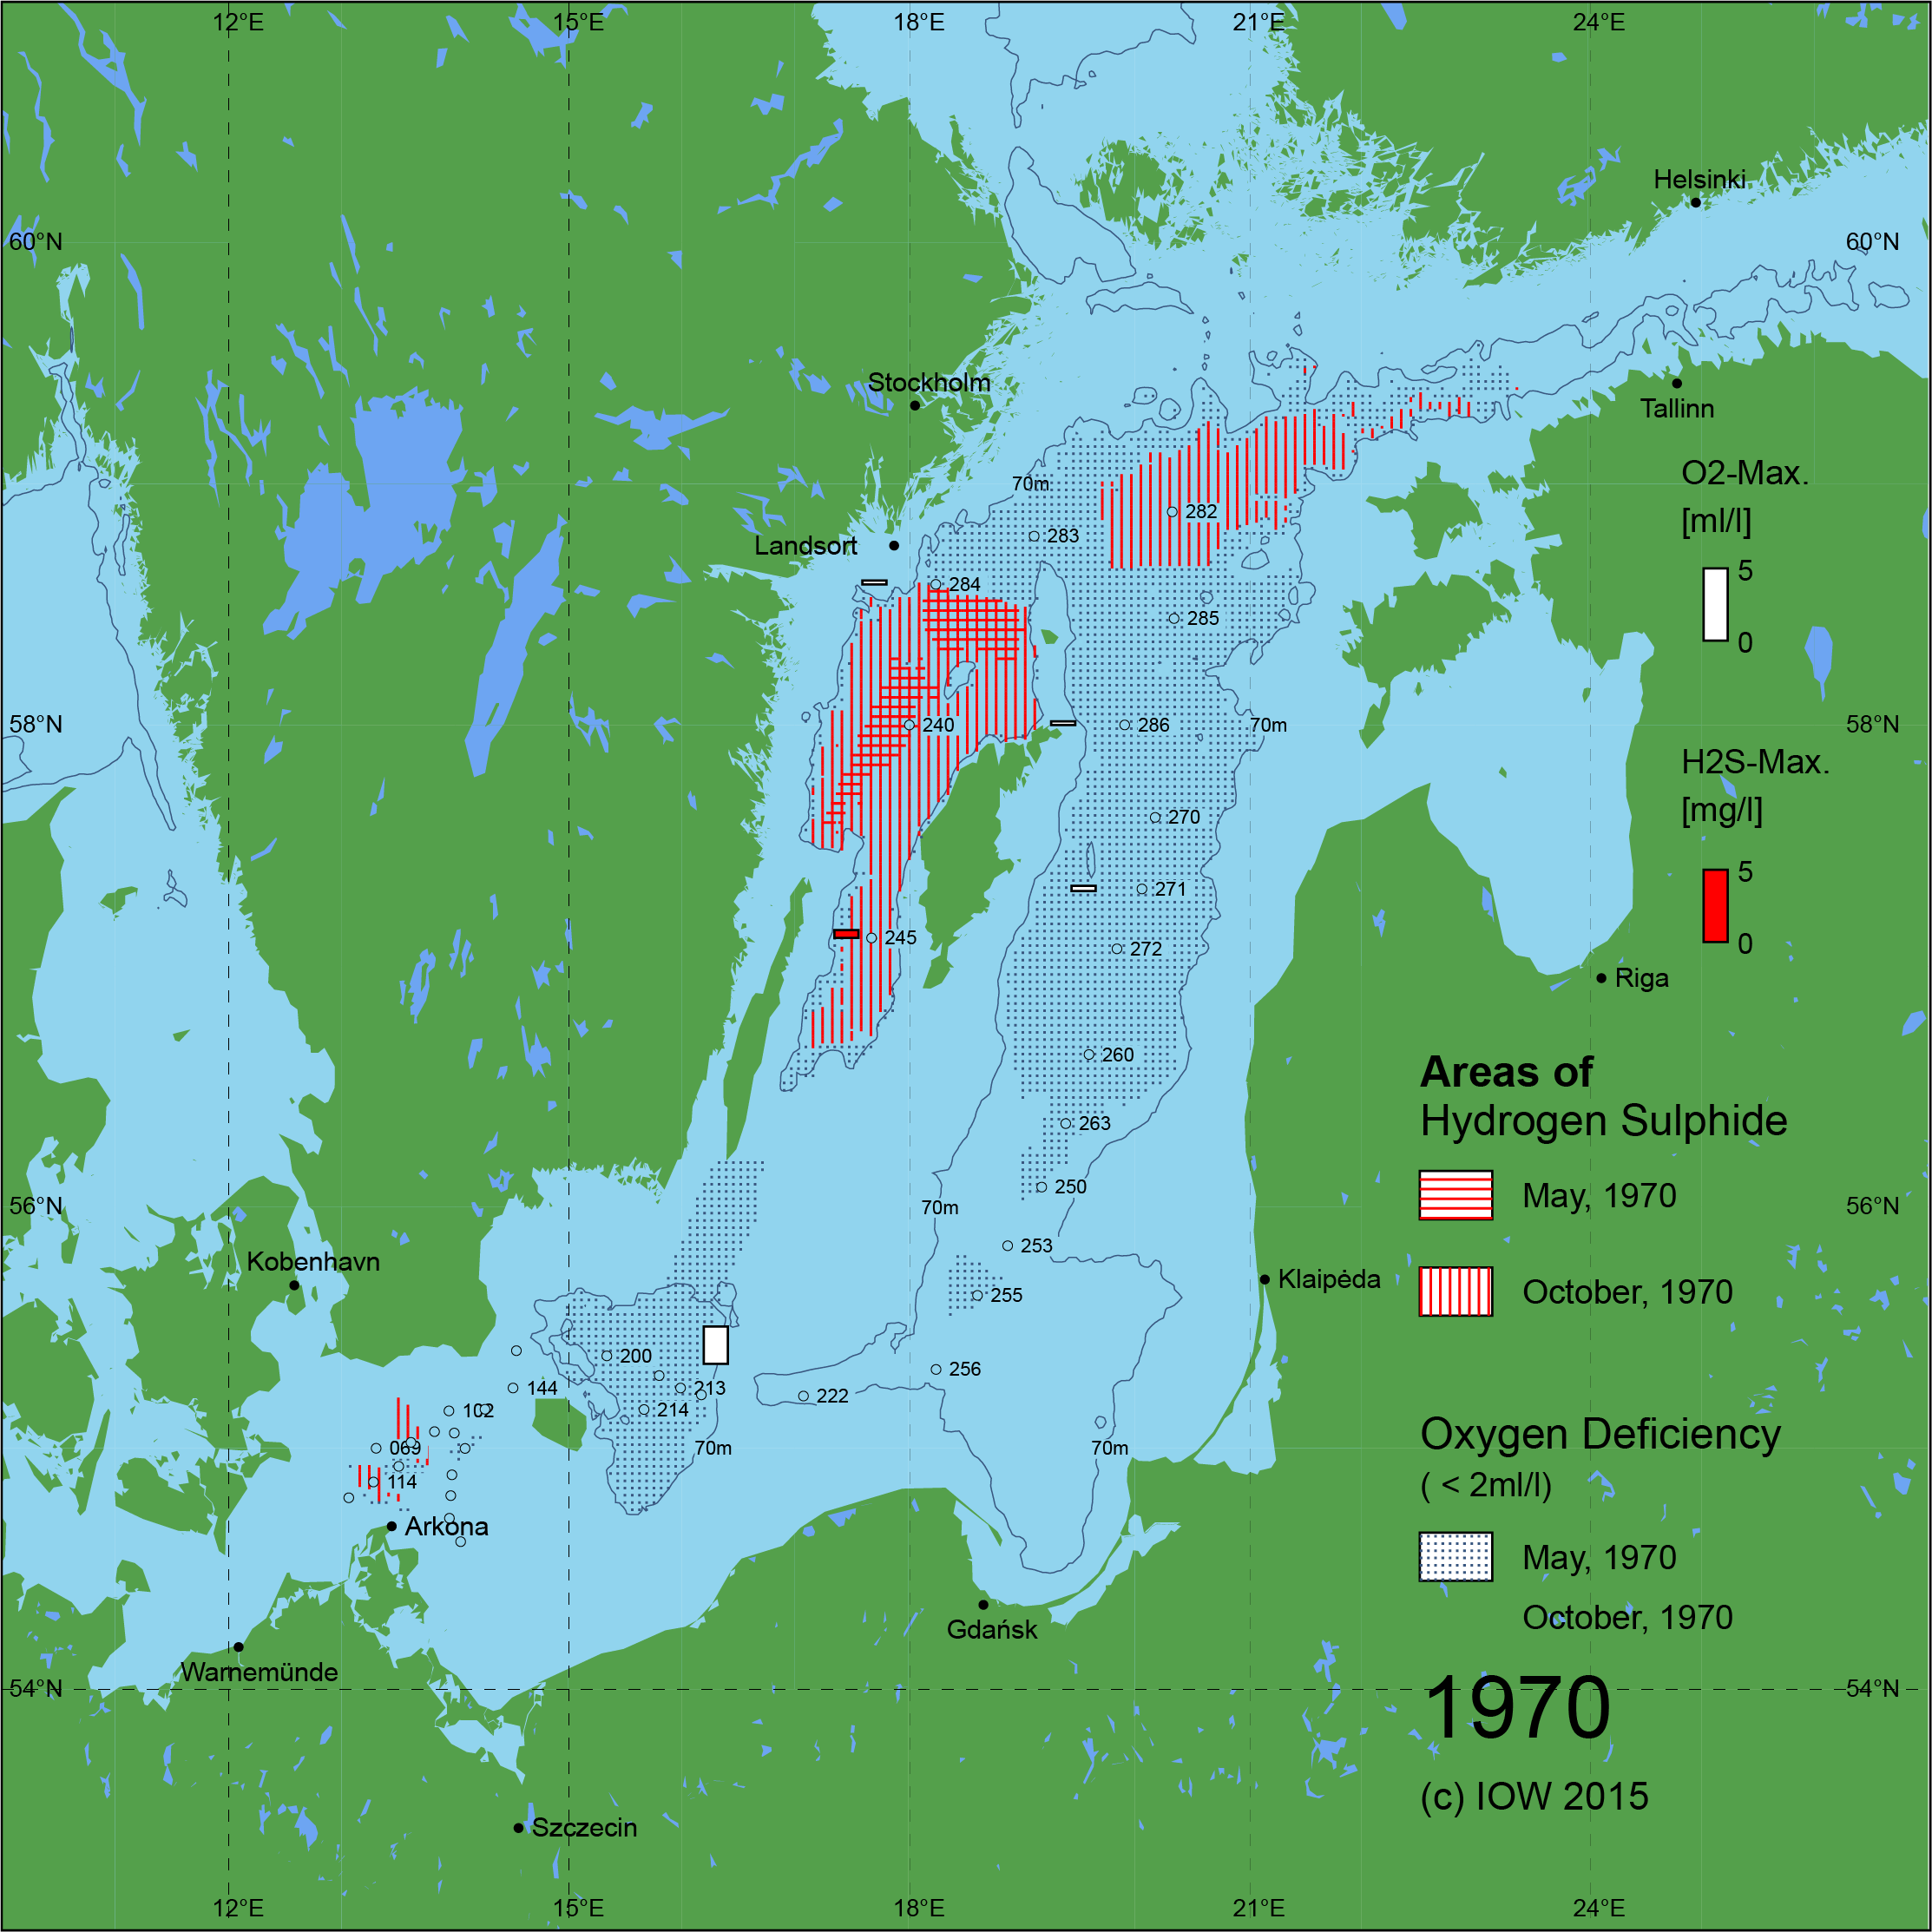 Sauerstoffarme und sauerstofffreie Gebiete in der Ostsee - 1970